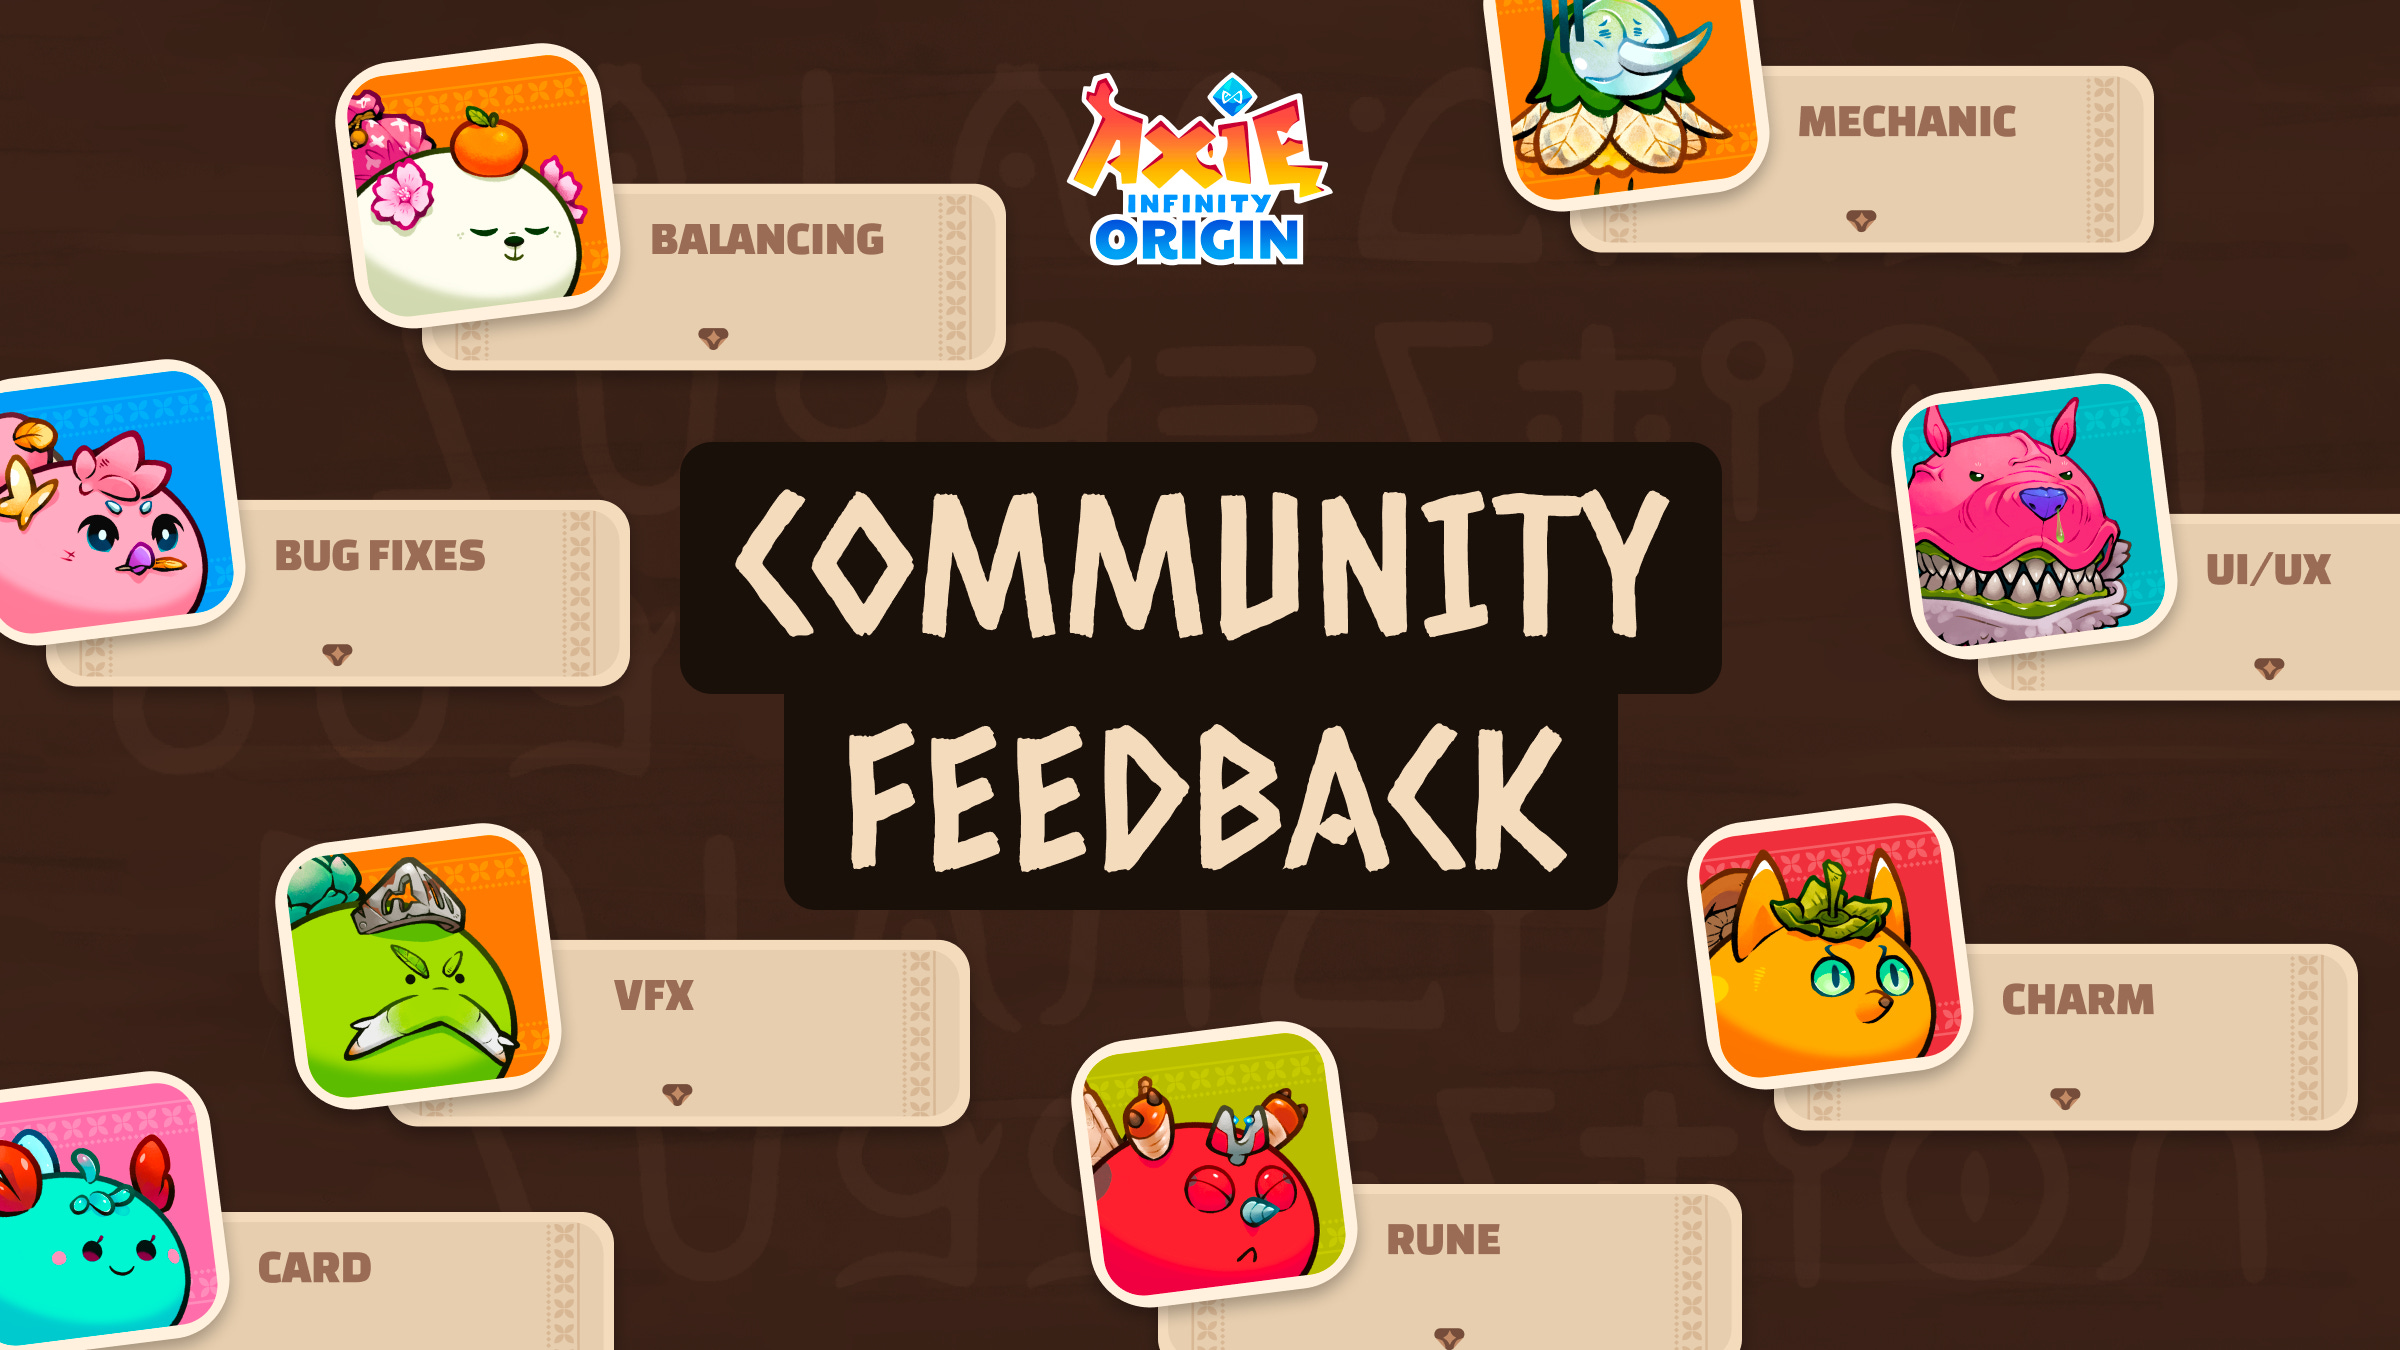 Community Feedback: Sự phản hồi của cộng đồng là rất quan trọng đối với Axie Infinity, và chúng tôi sẵn sàng lắng nghe mọi ý kiến đóng góp. Xem hình ảnh để thấy một số phản hồi tích cực từ cộng đồng và cảm nhận được cách Axie Infinity đang phát triển để đáp ứng nhu cầu của người chơi.